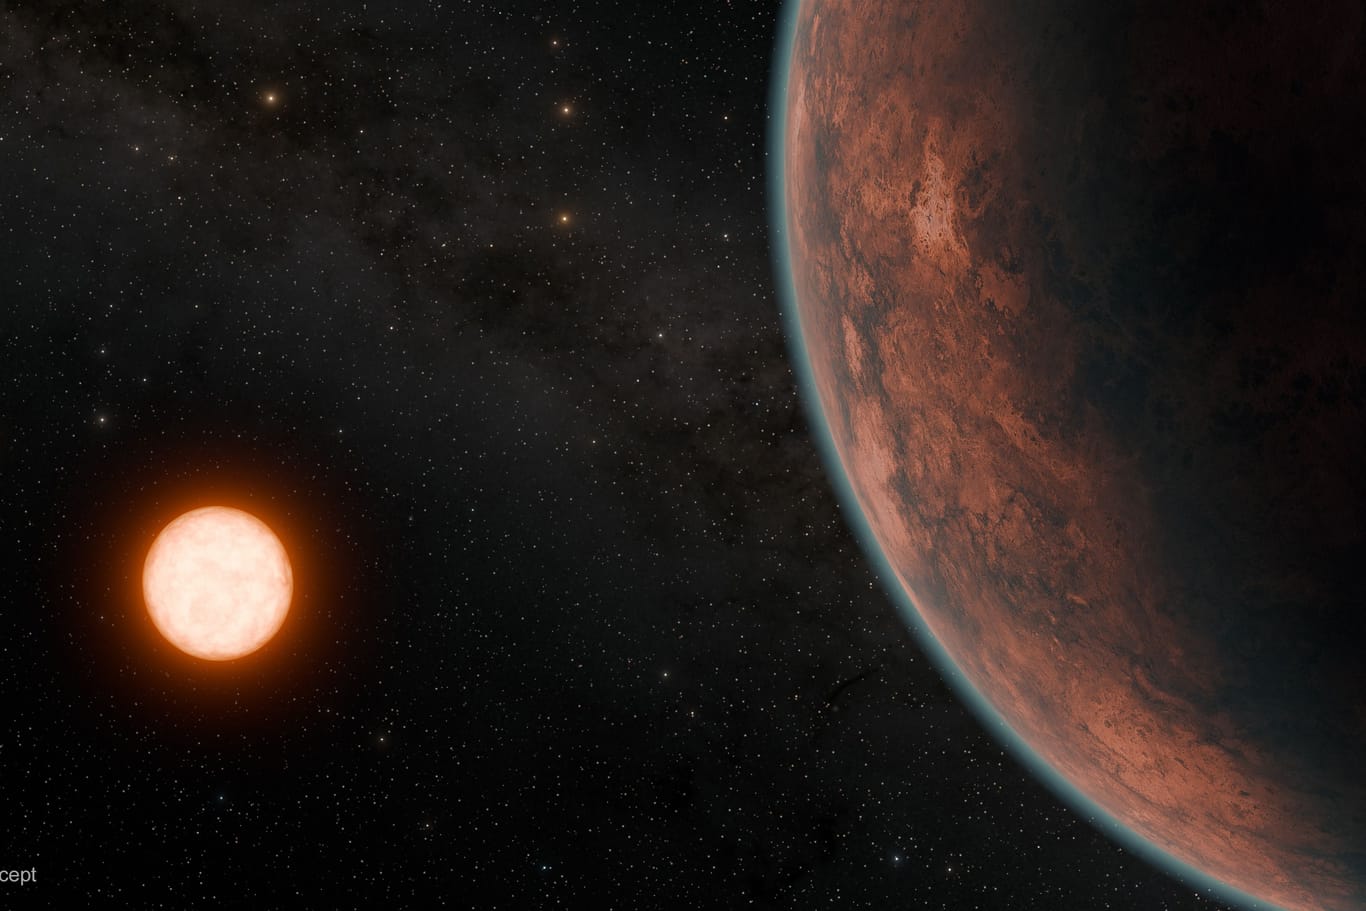 Diese von einem Künstler entworfene Darstellung zeigt den Planeten Gliese 12 b vor seinem Stern, einem Roten Zwerg.